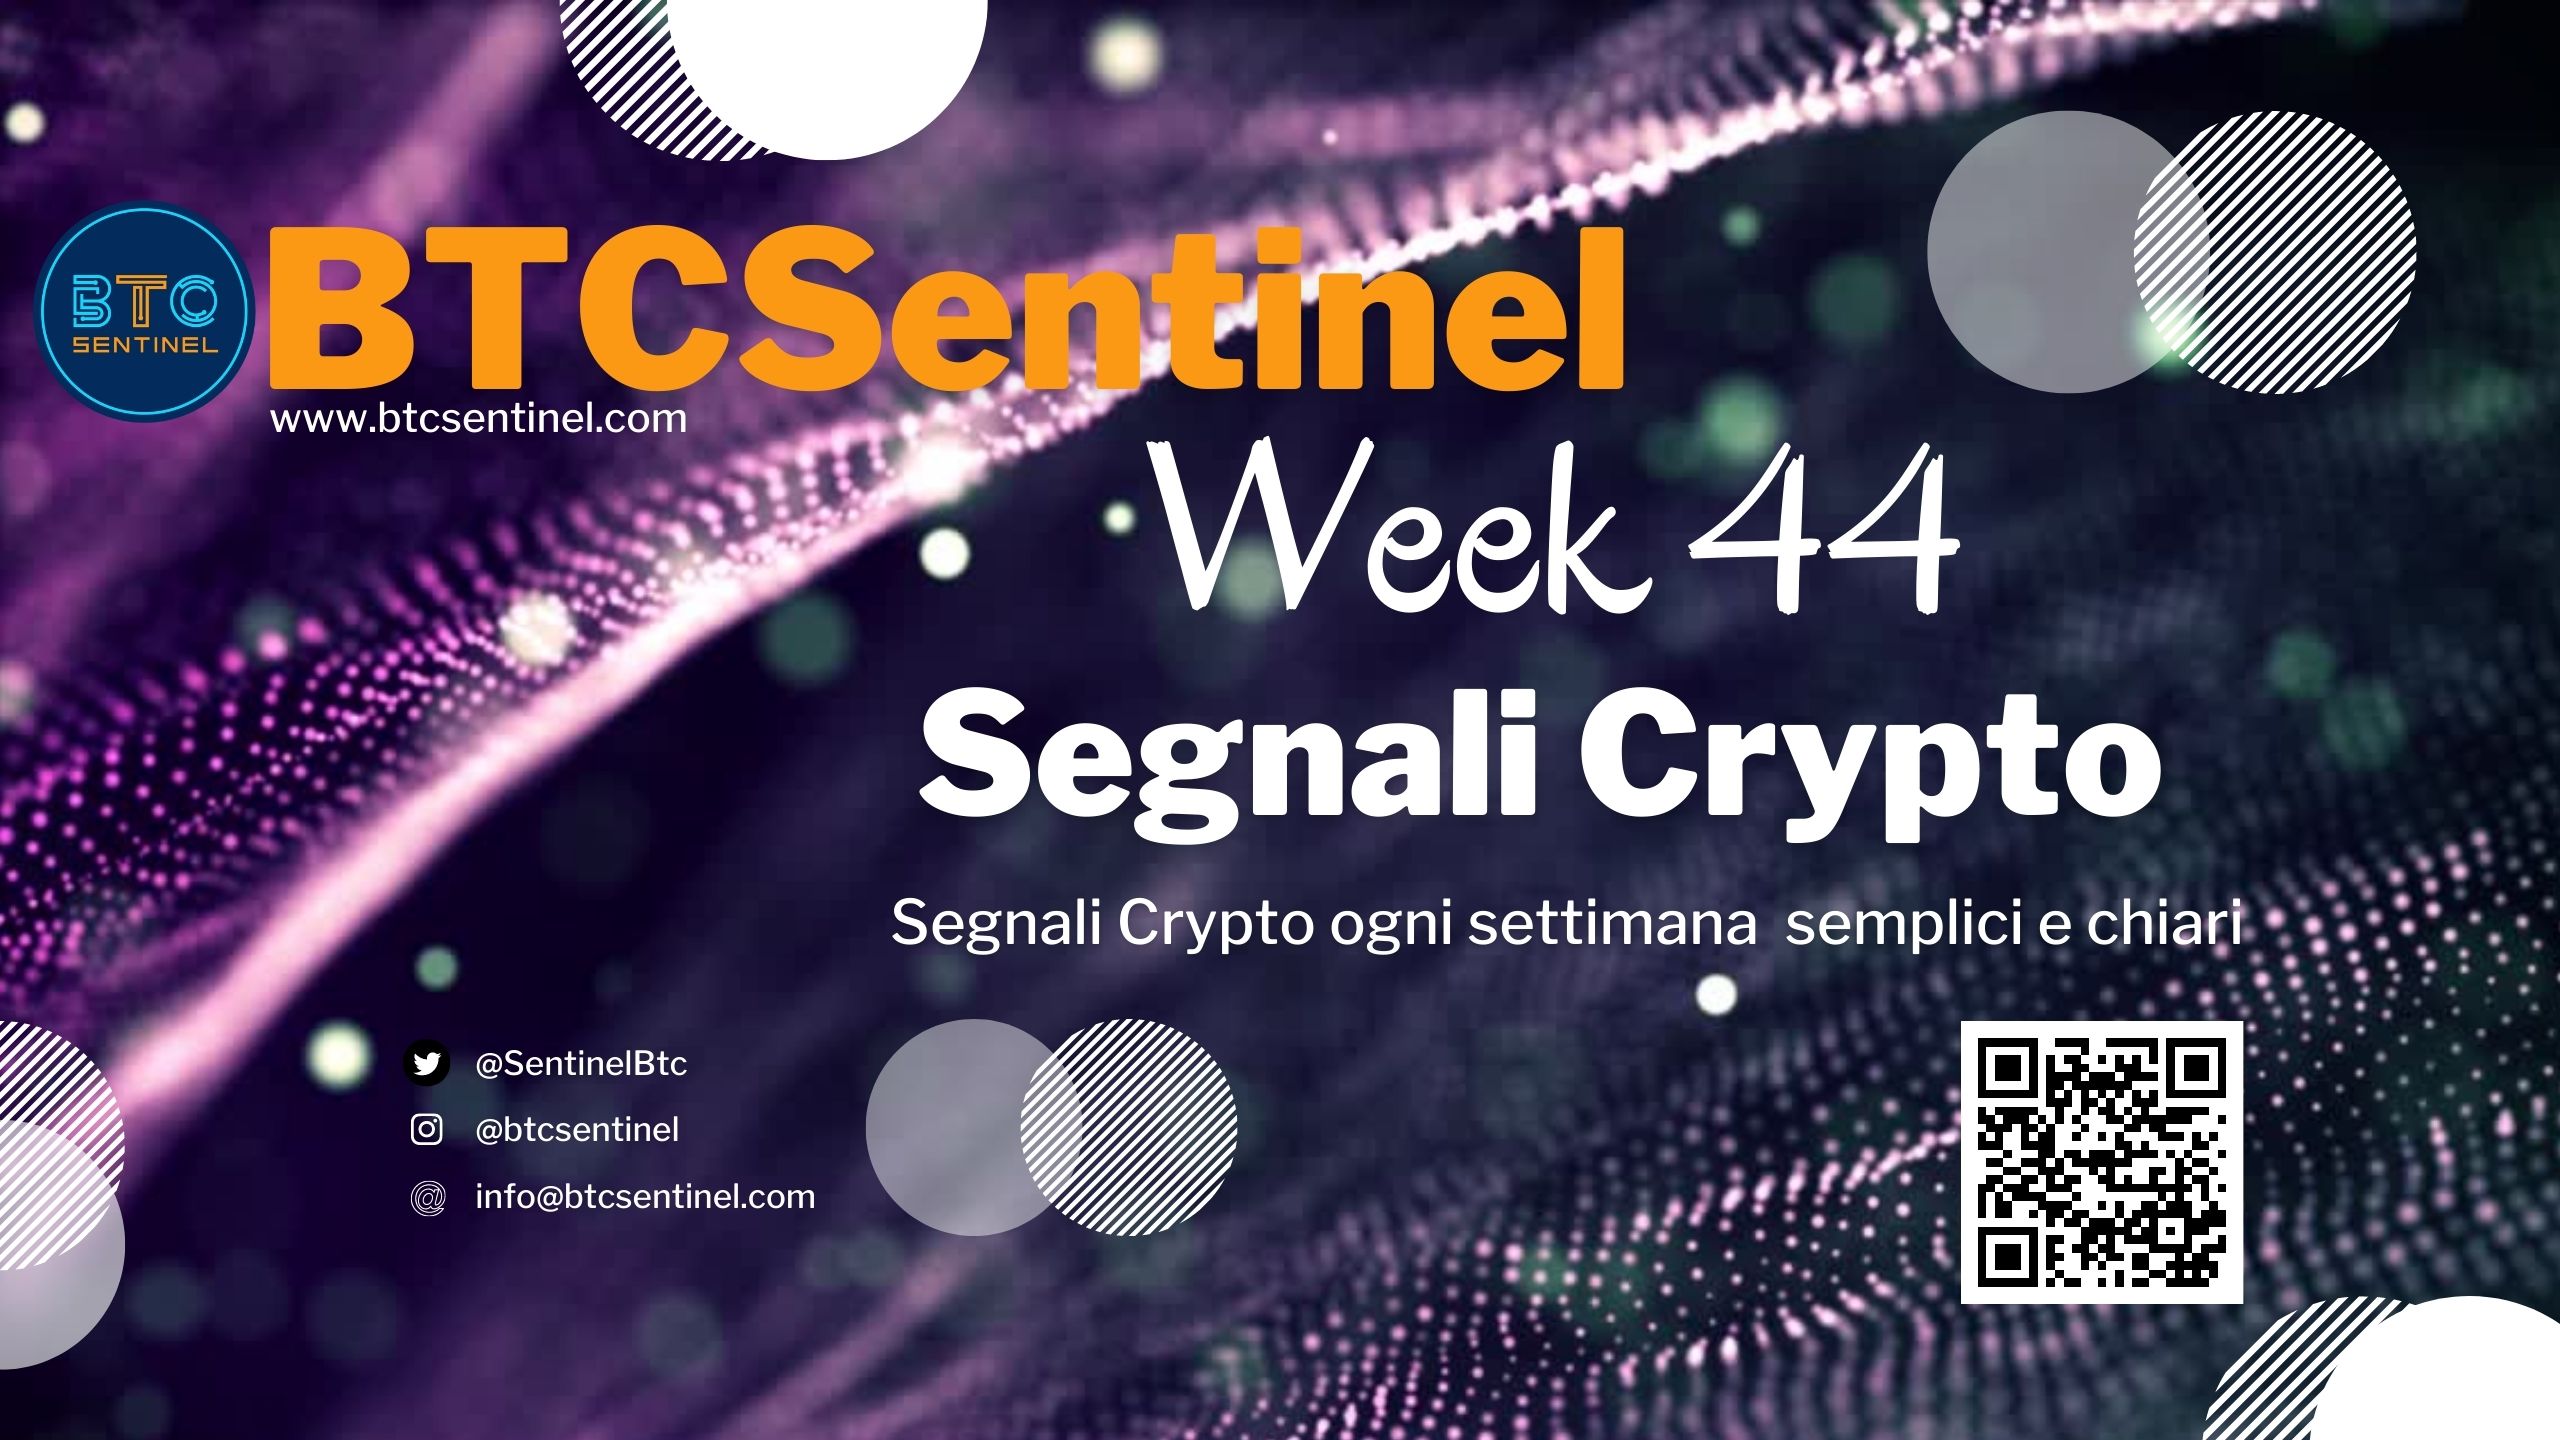 Segnali Crypto Week 44: live oggi alle 17.00 su YouTube. News dal mondo crypto raccontate per capire il mercato